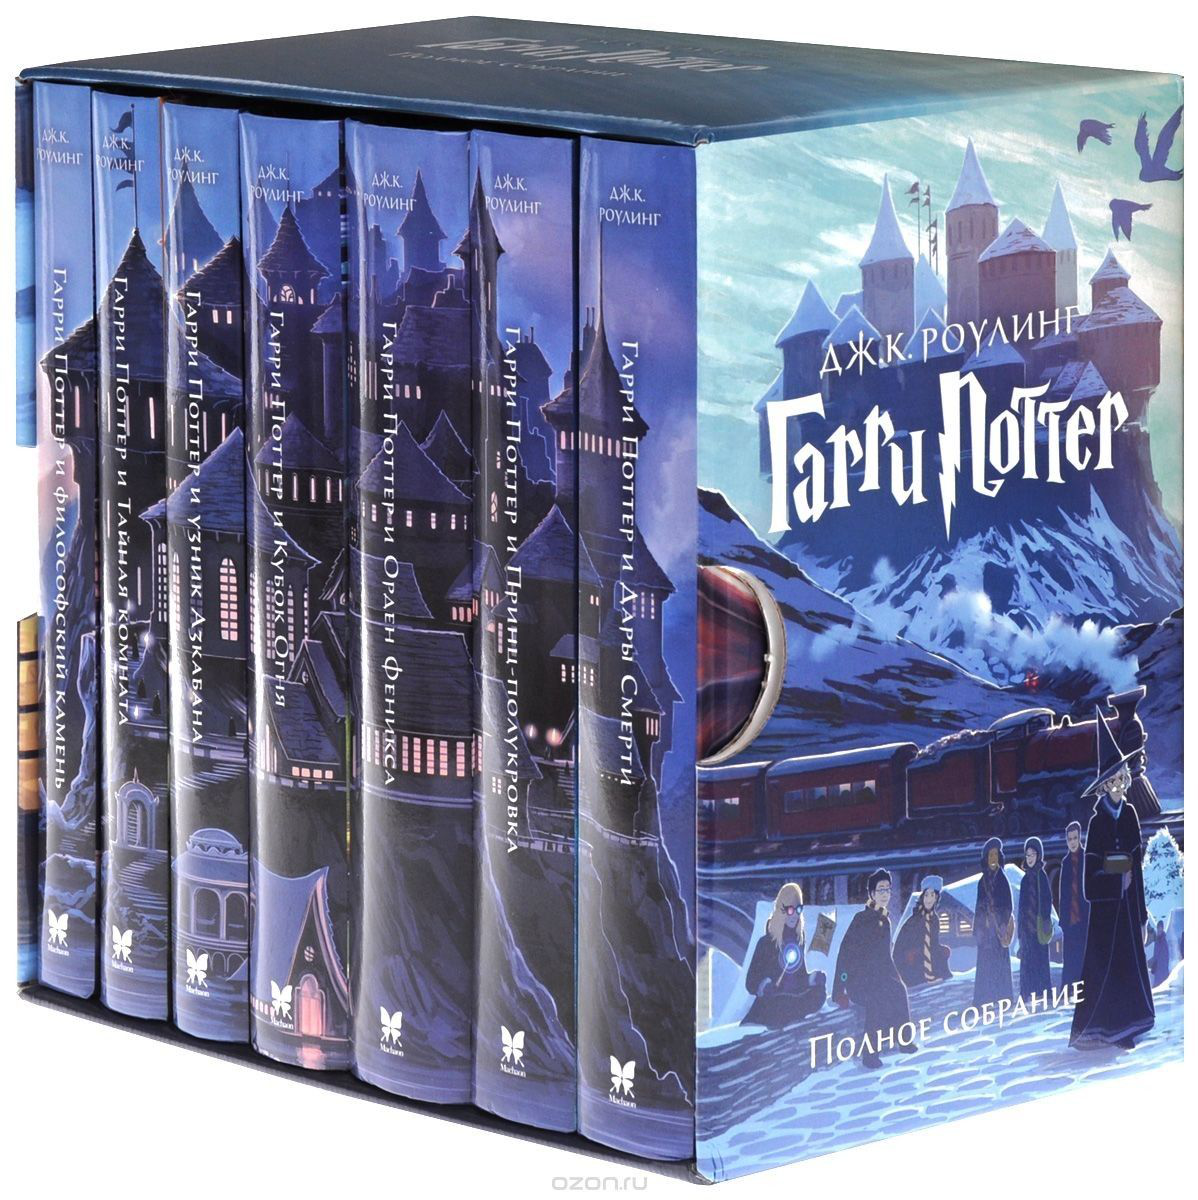 Найбільші продавці е-книг росії знімають з продажу історію про Гаррі Поттера